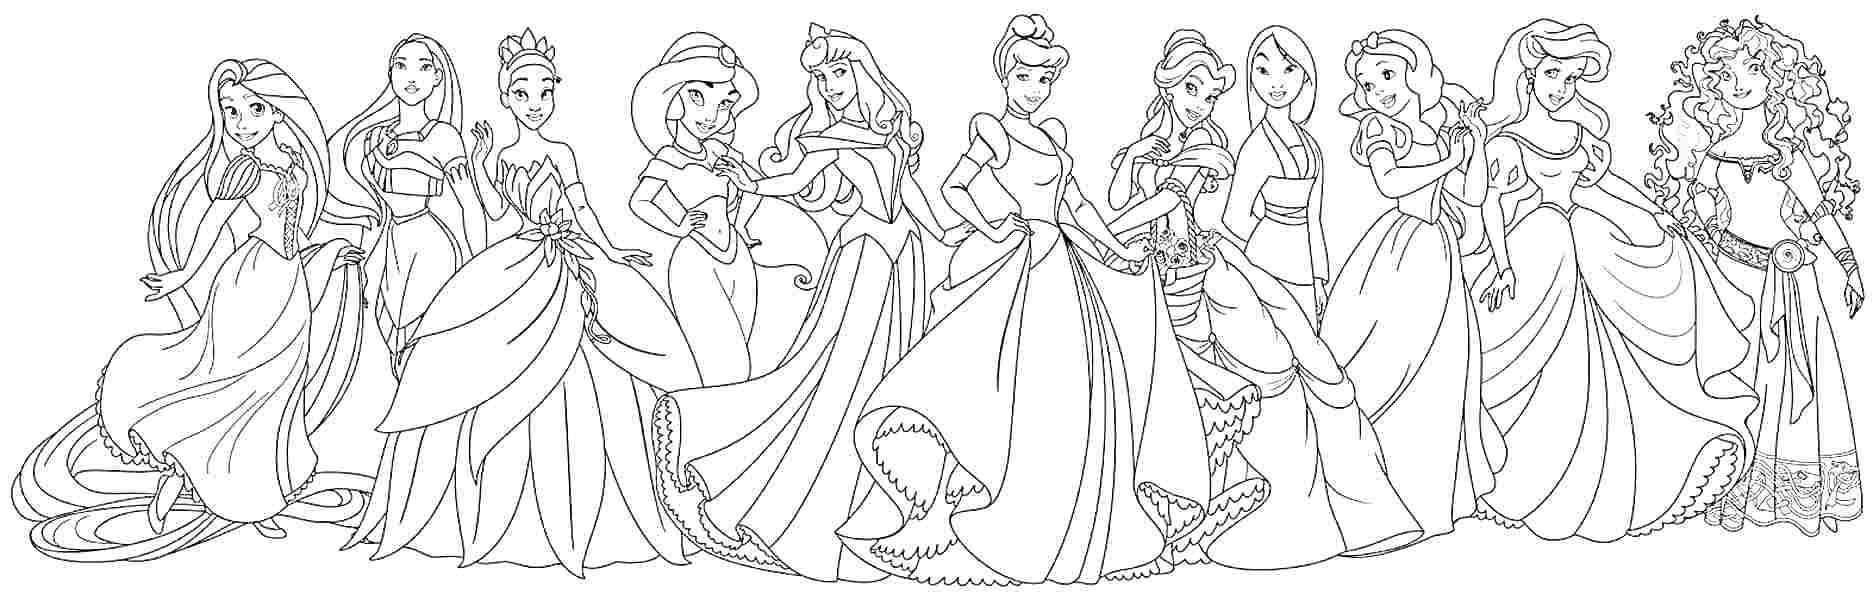 Раскраска Диснеевские принцессы - группа принцесс, стоящих в ряд: Рапунцель, Белоснежка, Мулан, Жасмин, Тиана, Аврора, Золушка, Бель, Ариэль, Покахонтас, Мерида